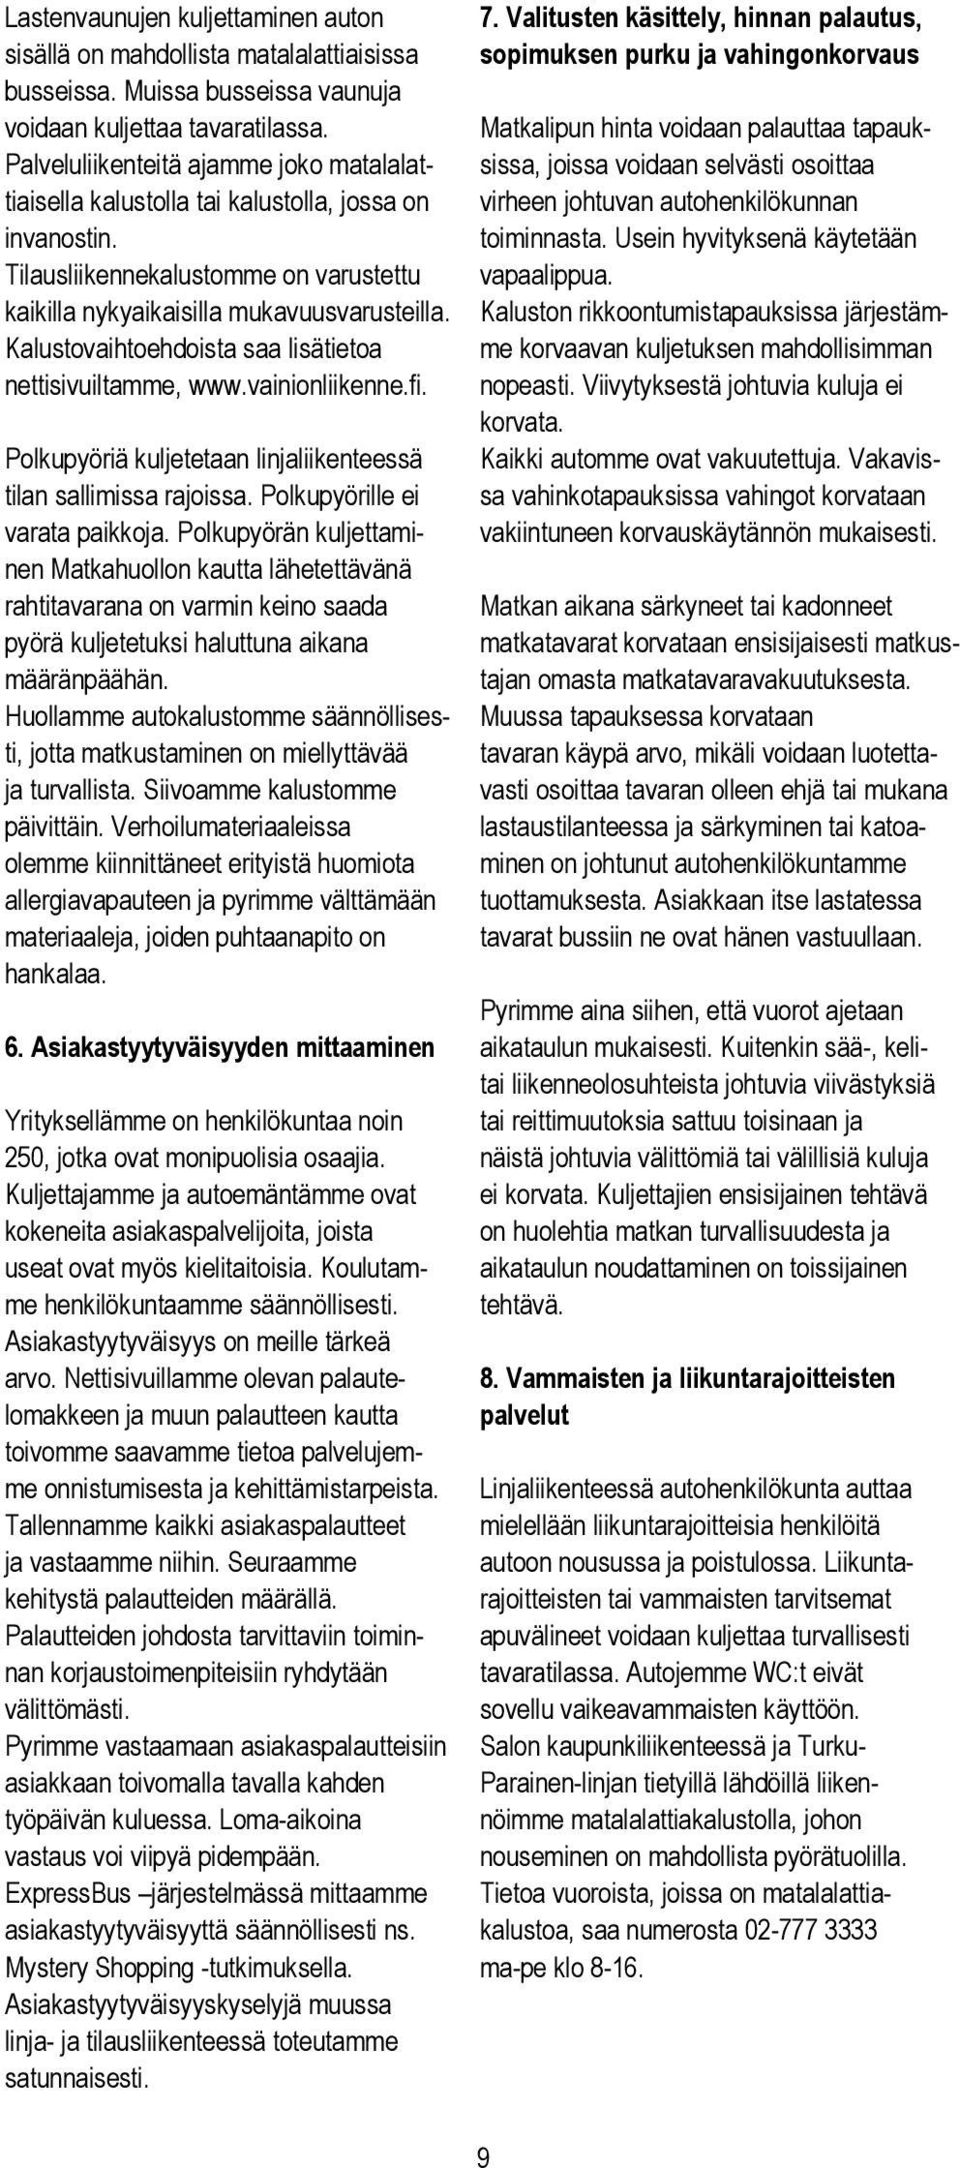 Kalustovaihtoehdoista saa lisätietoa nettisivuiltamme, www.vainionliikenne.fi. 7.